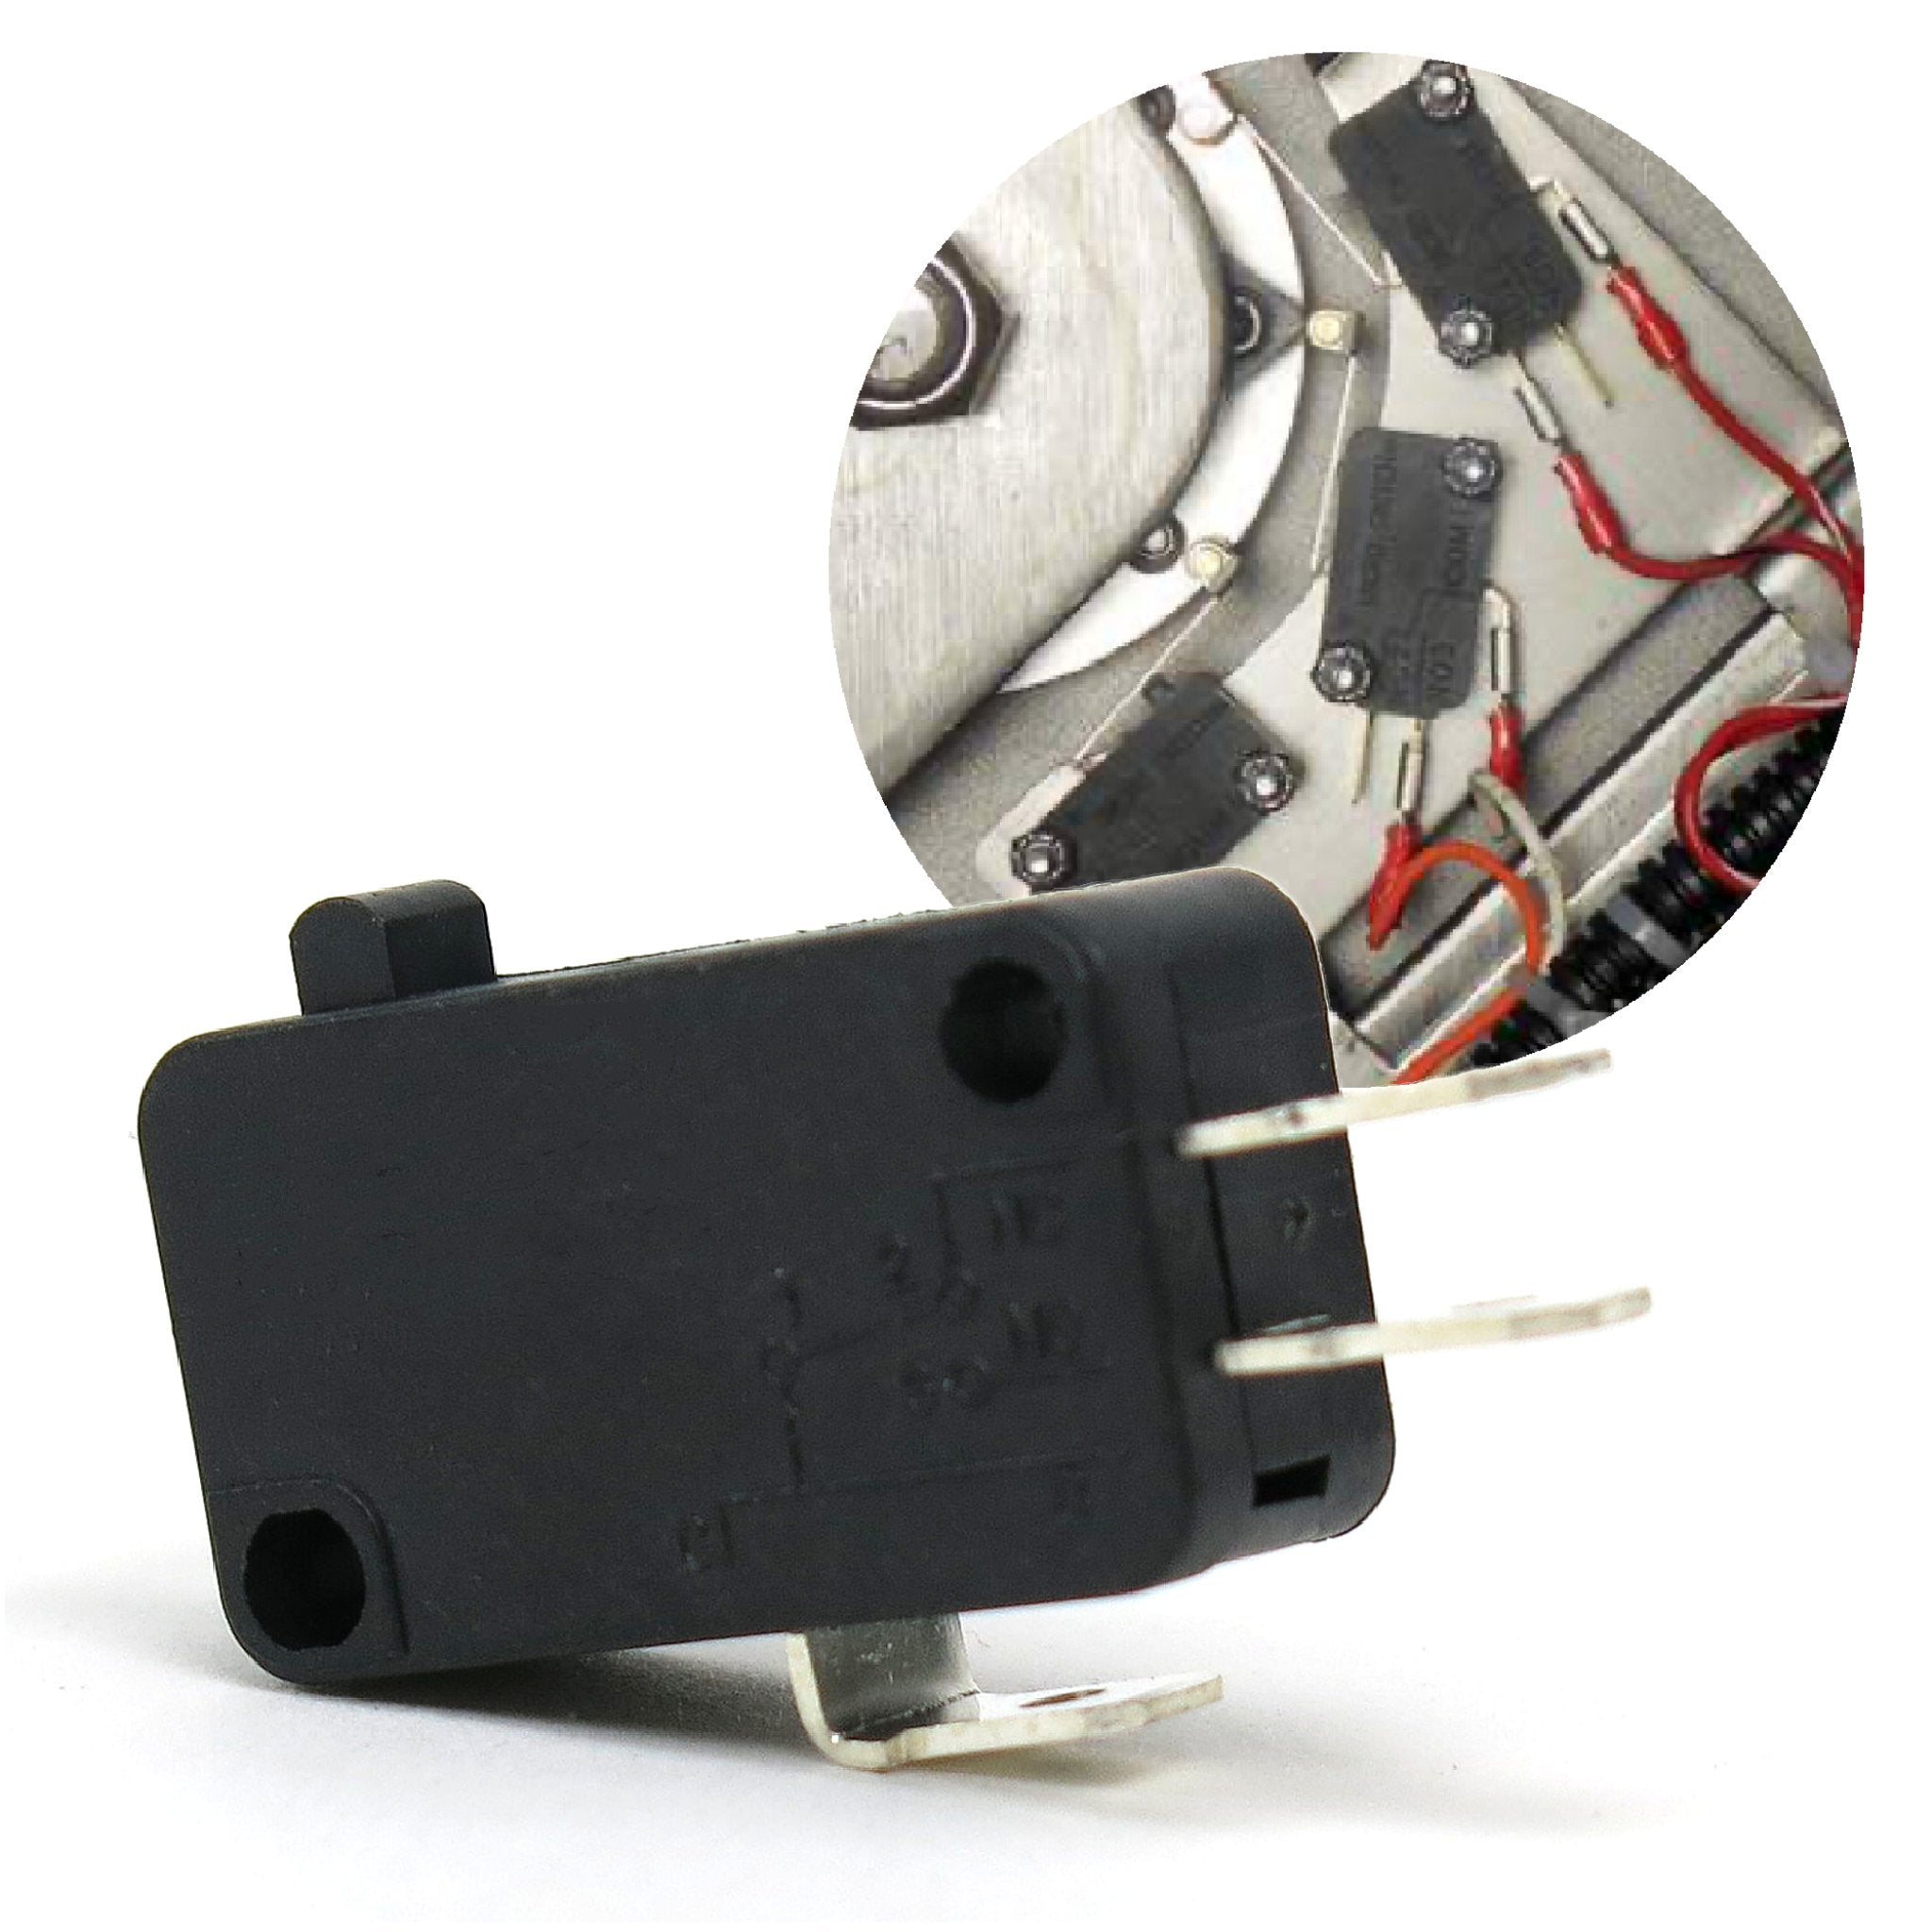 Pulsador momentáneo Micro interruptor de límite SPDT 1NO 1NC 12V 6A Sensor de cierre abierto